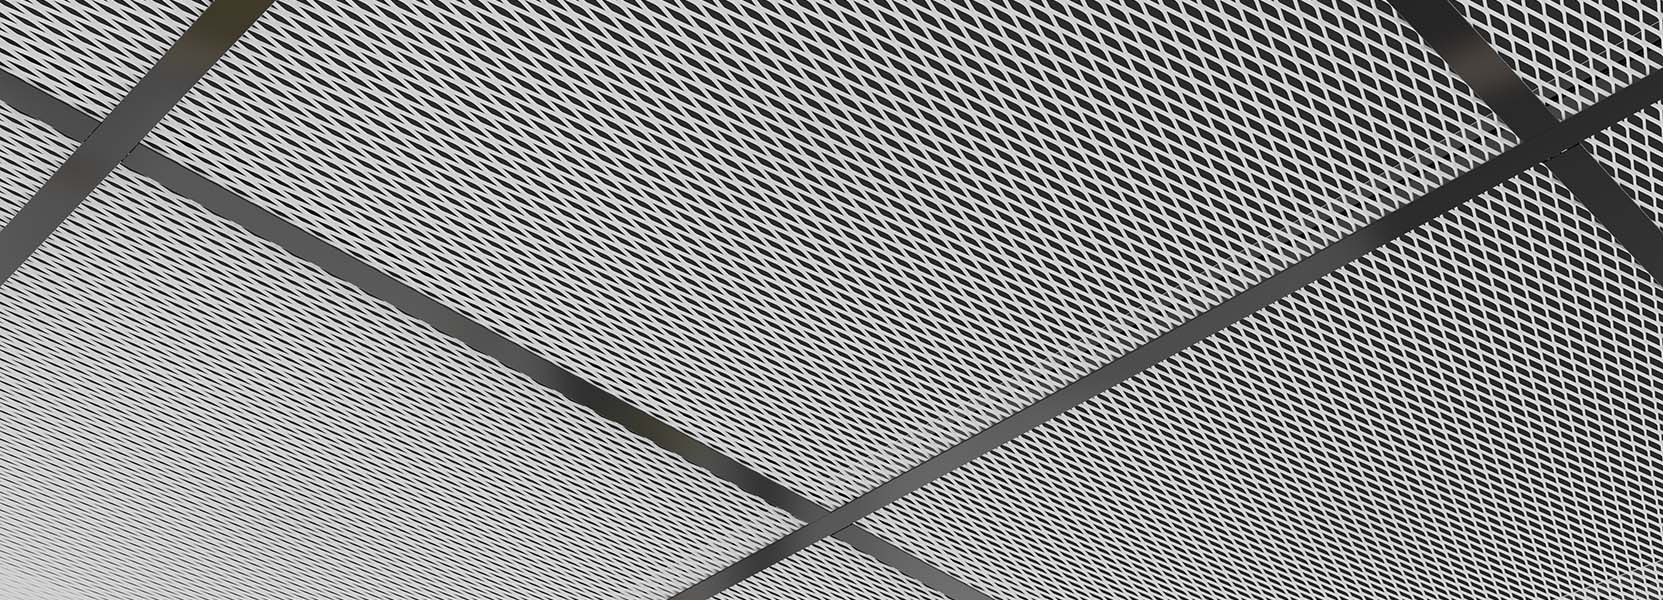 Zentia DecoMesh - black grid and white tile